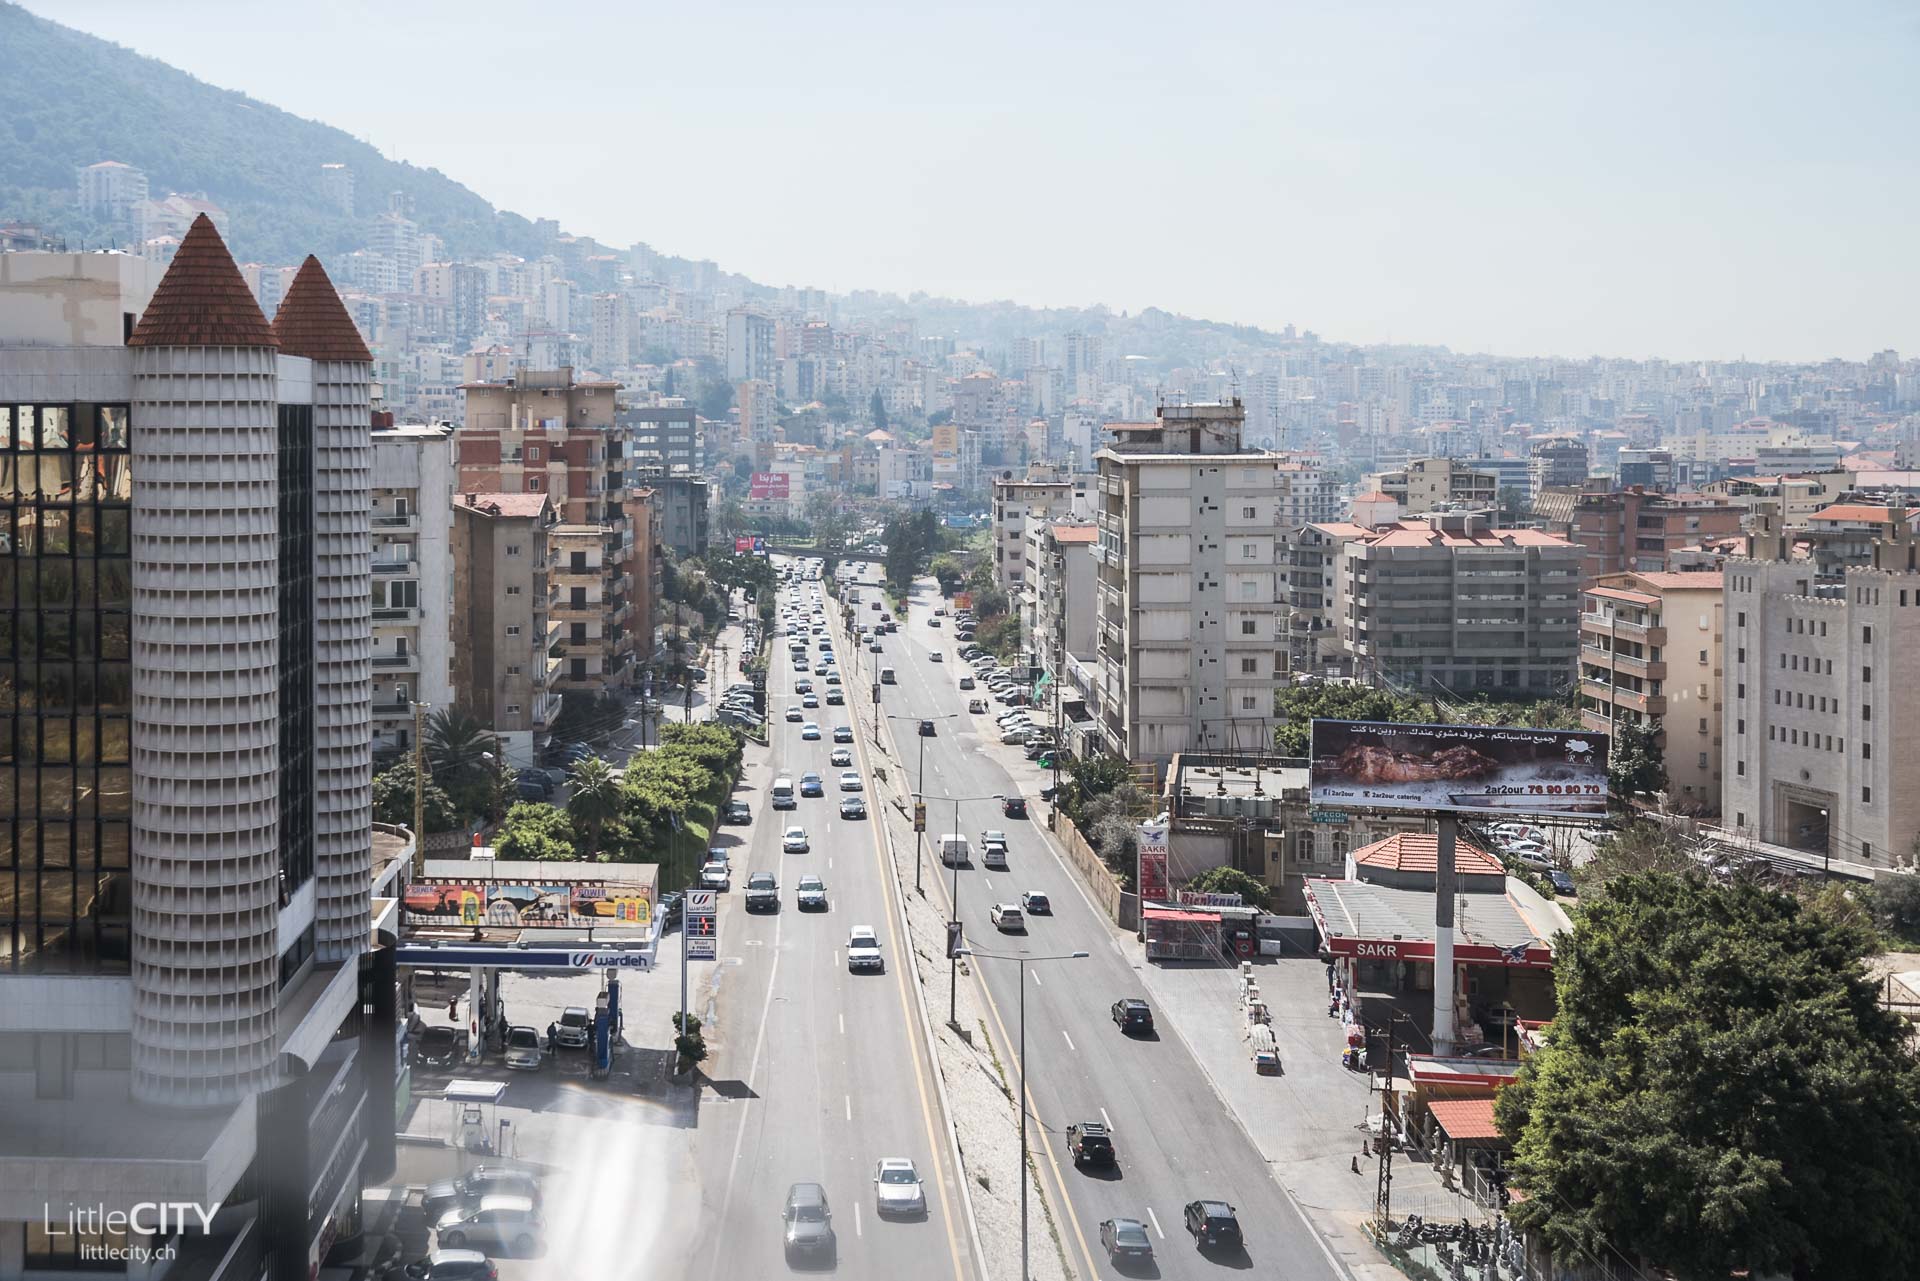 Libanon Reisebericht: Harissa Téléferique